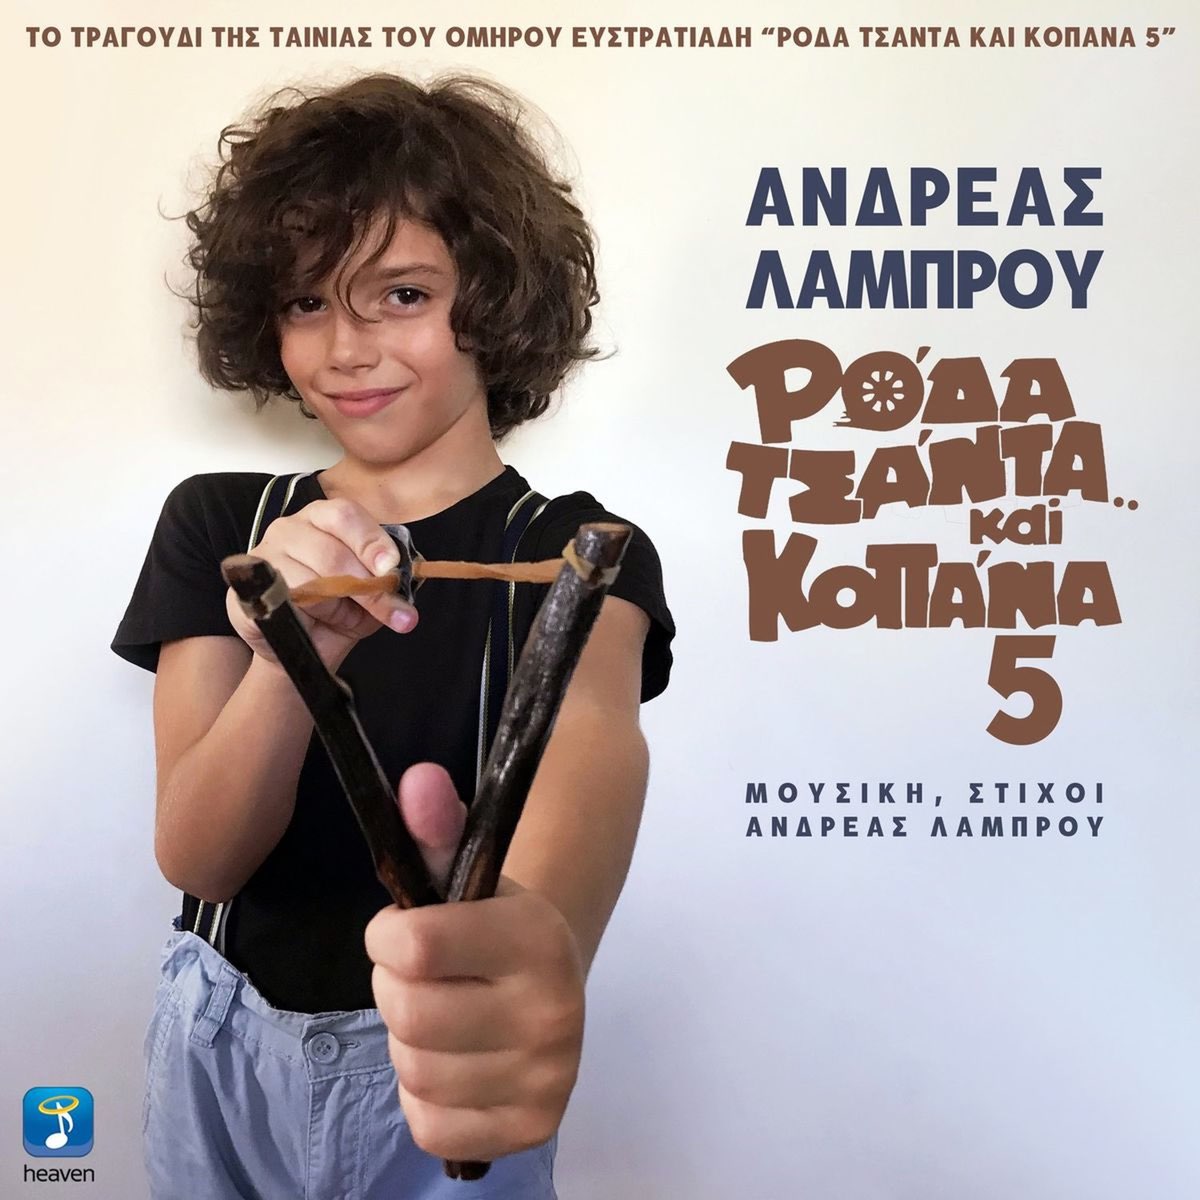 Roda Tsanta Ke Kopana 5 - Single - Album by Andreas Lambrou - Apple Music